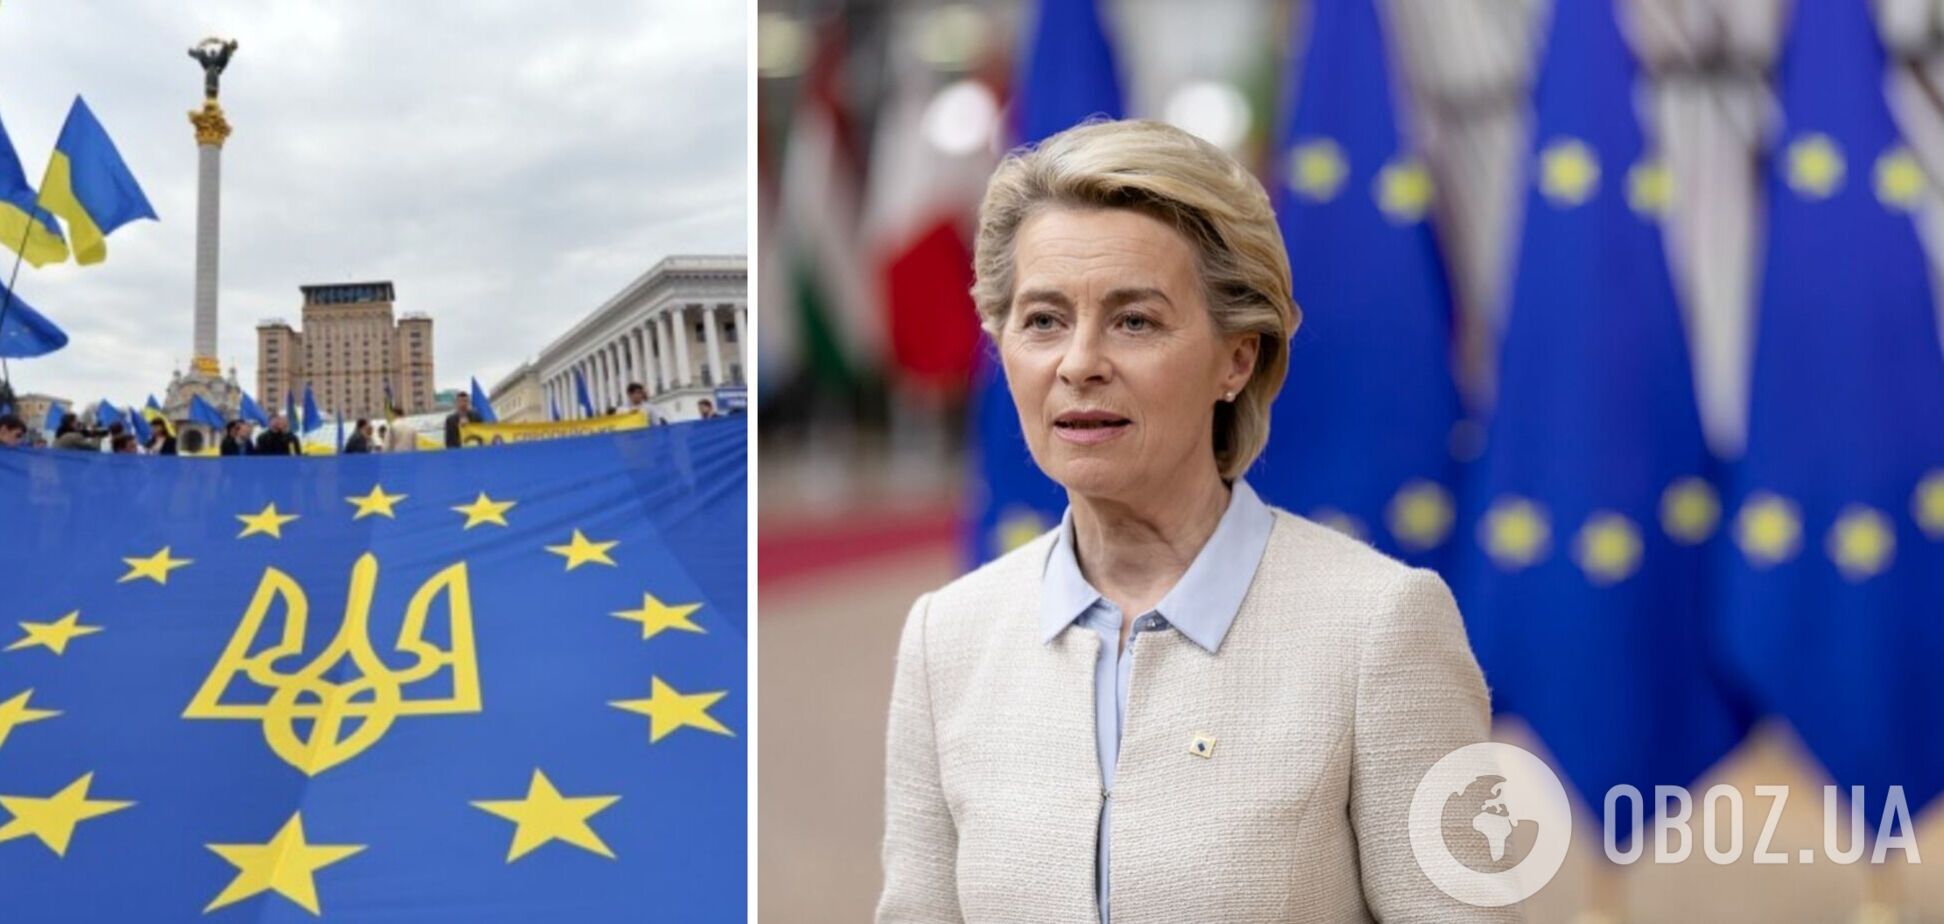 Урсула фон дер Ляйен выступила за членство Украины в ЕС